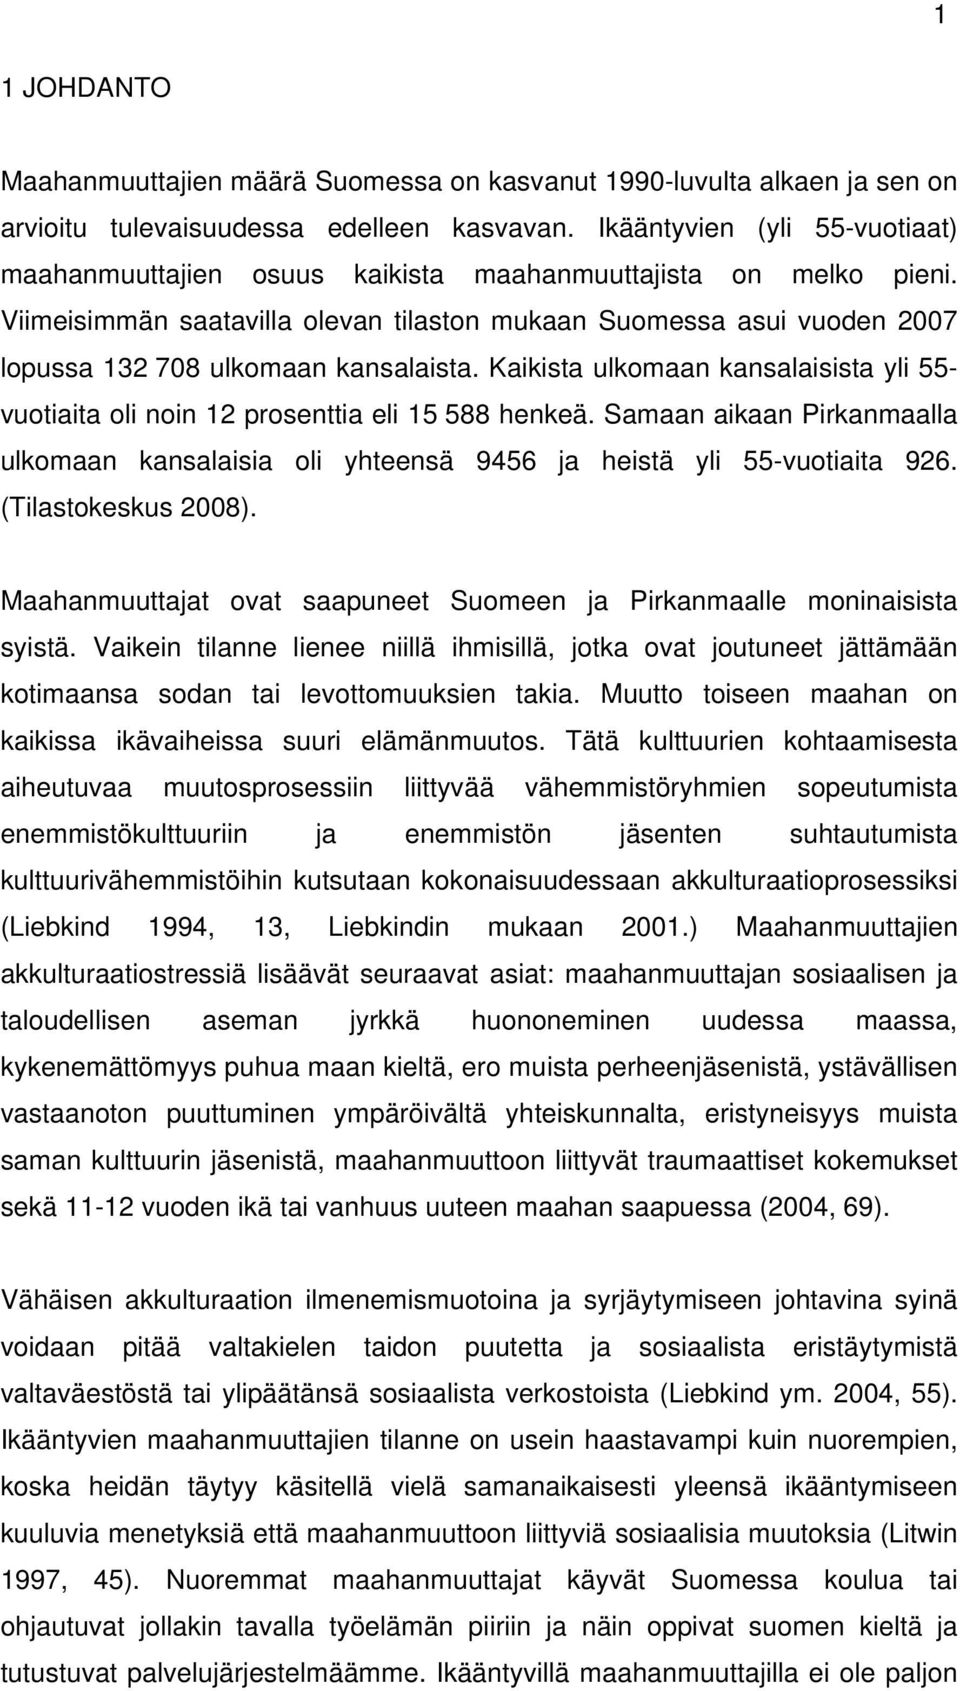 Viimeisimmän saatavilla olevan tilaston mukaan Suomessa asui vuoden 2007 lopussa 132 708 ulkomaan kansalaista.